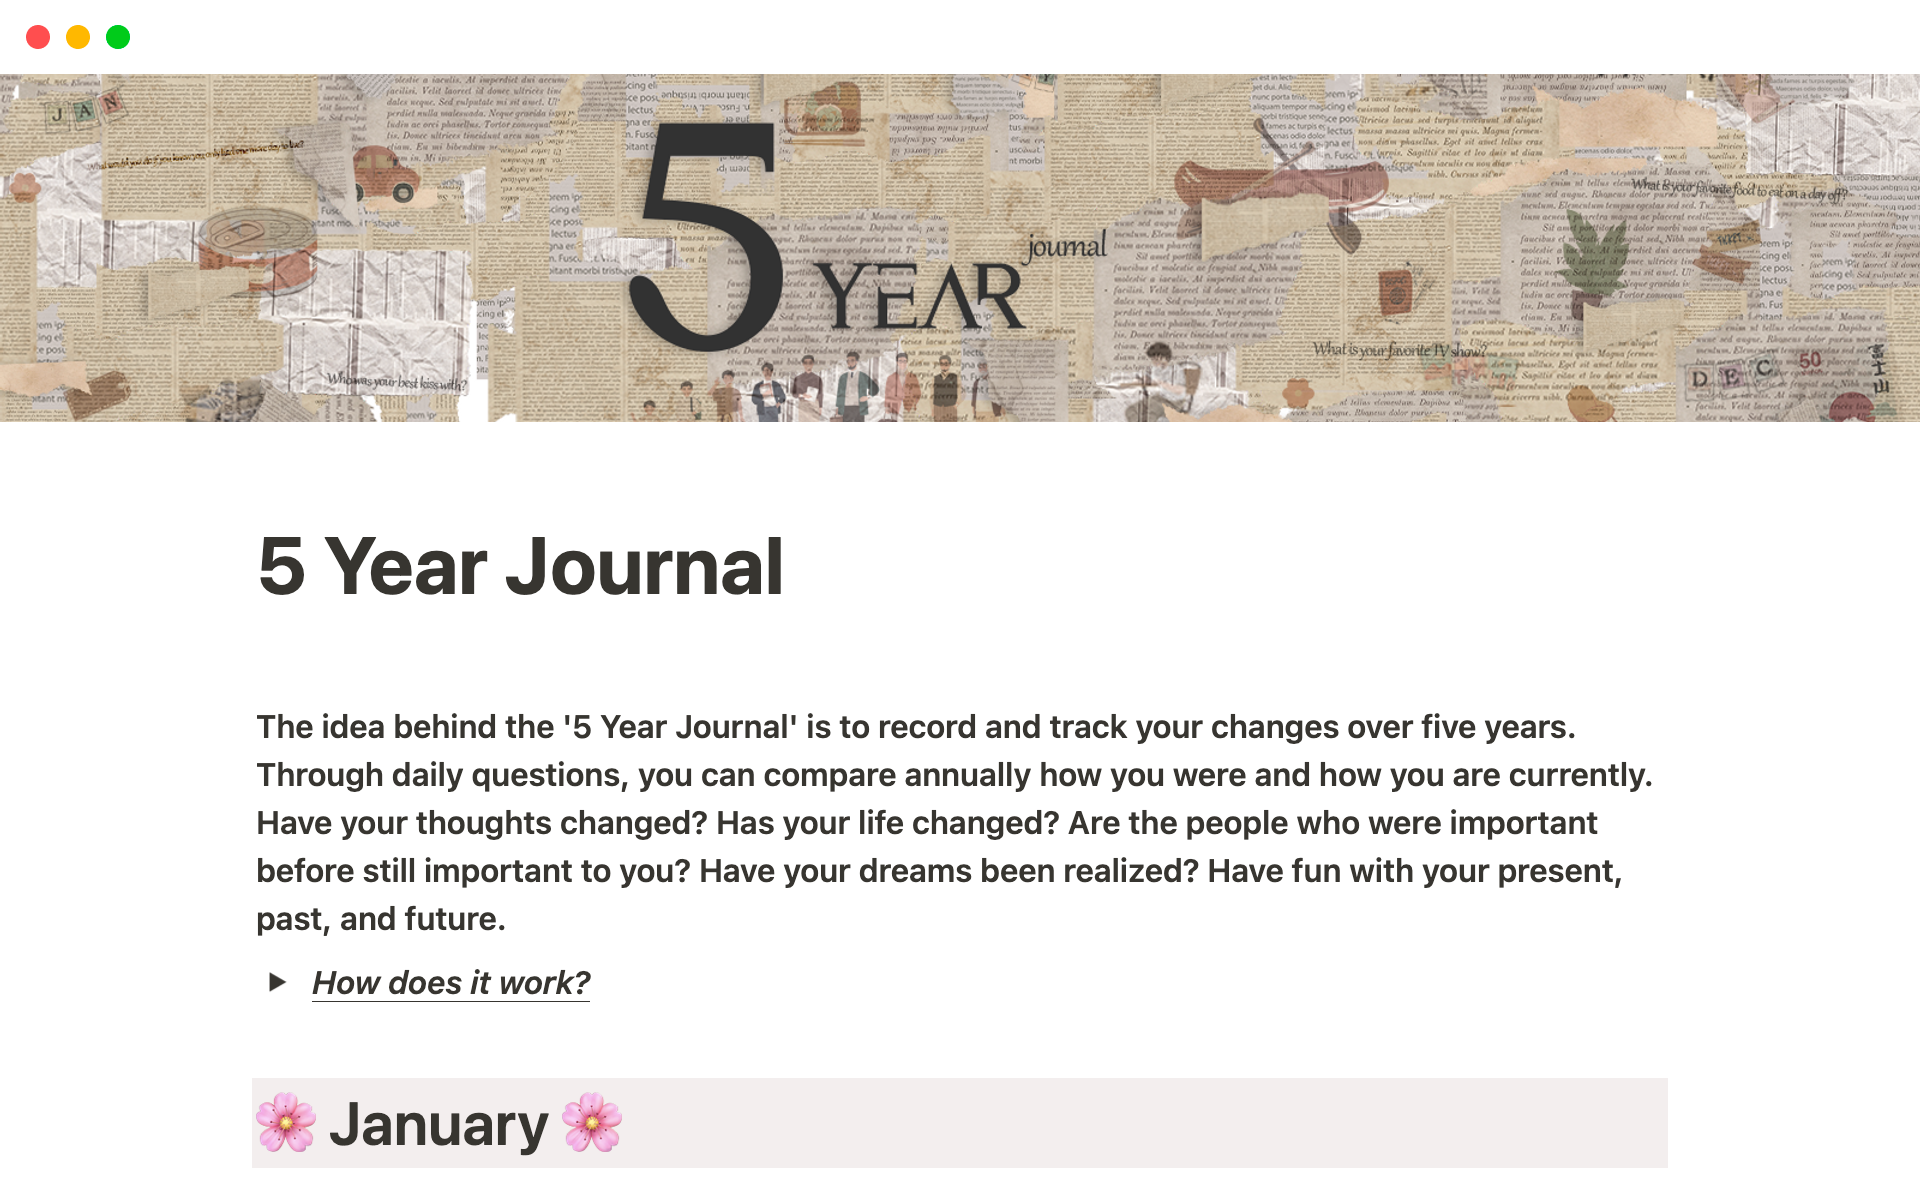 Uma prévia do modelo para 5 Year Journal